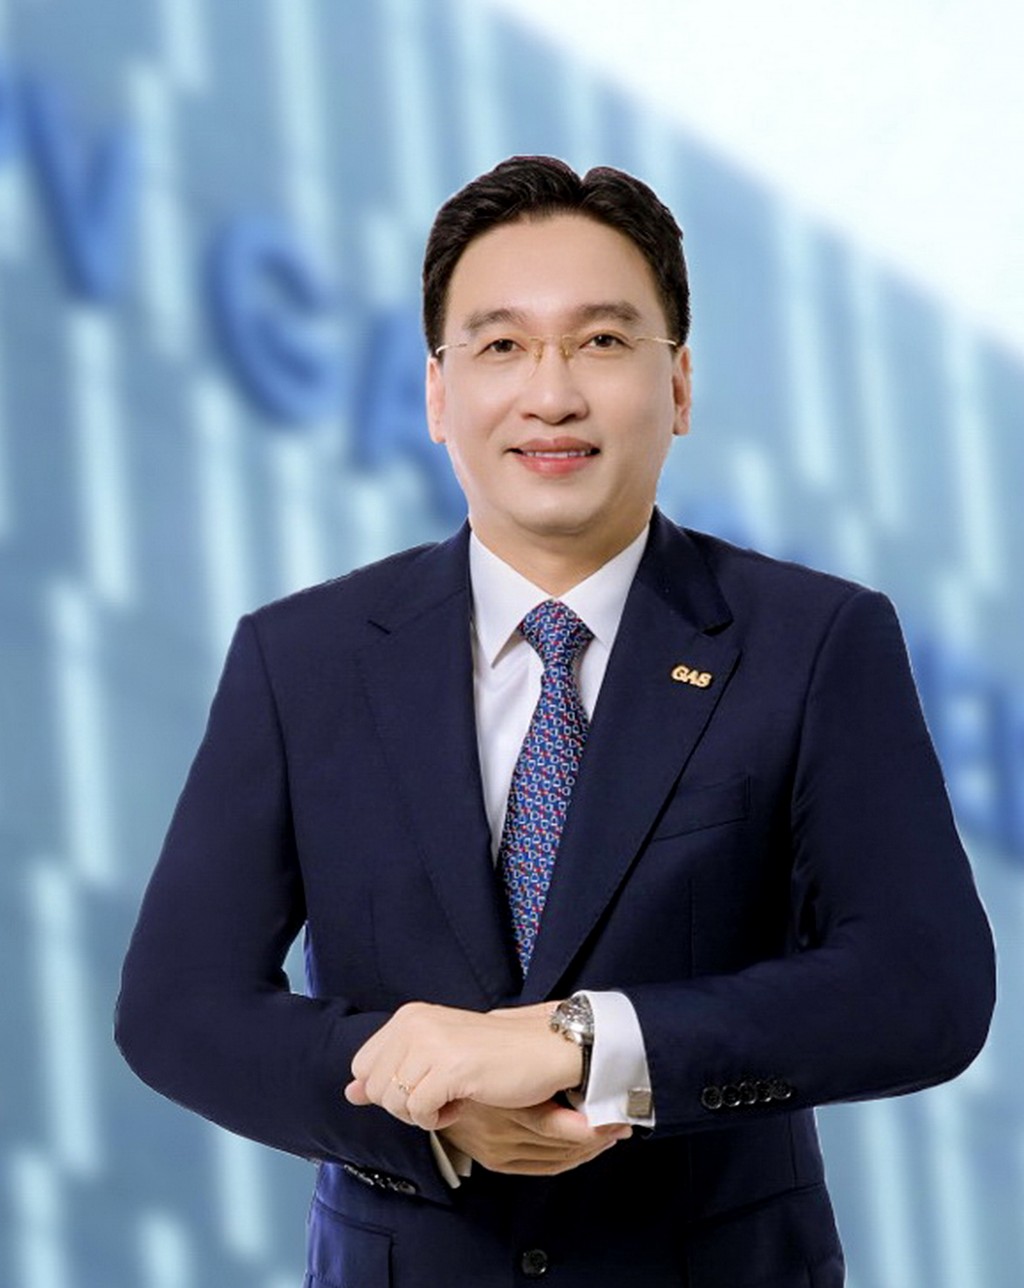 Bí thư Đảng ủy, Chủ tịch HĐQT PV GAS Nguyễn Thanh Bình:Mục tiêu của PV GAS là trở thành doanh nghiệp số 1 Việt Nam về kinh doanh hạ tầng và cung ứng LNG